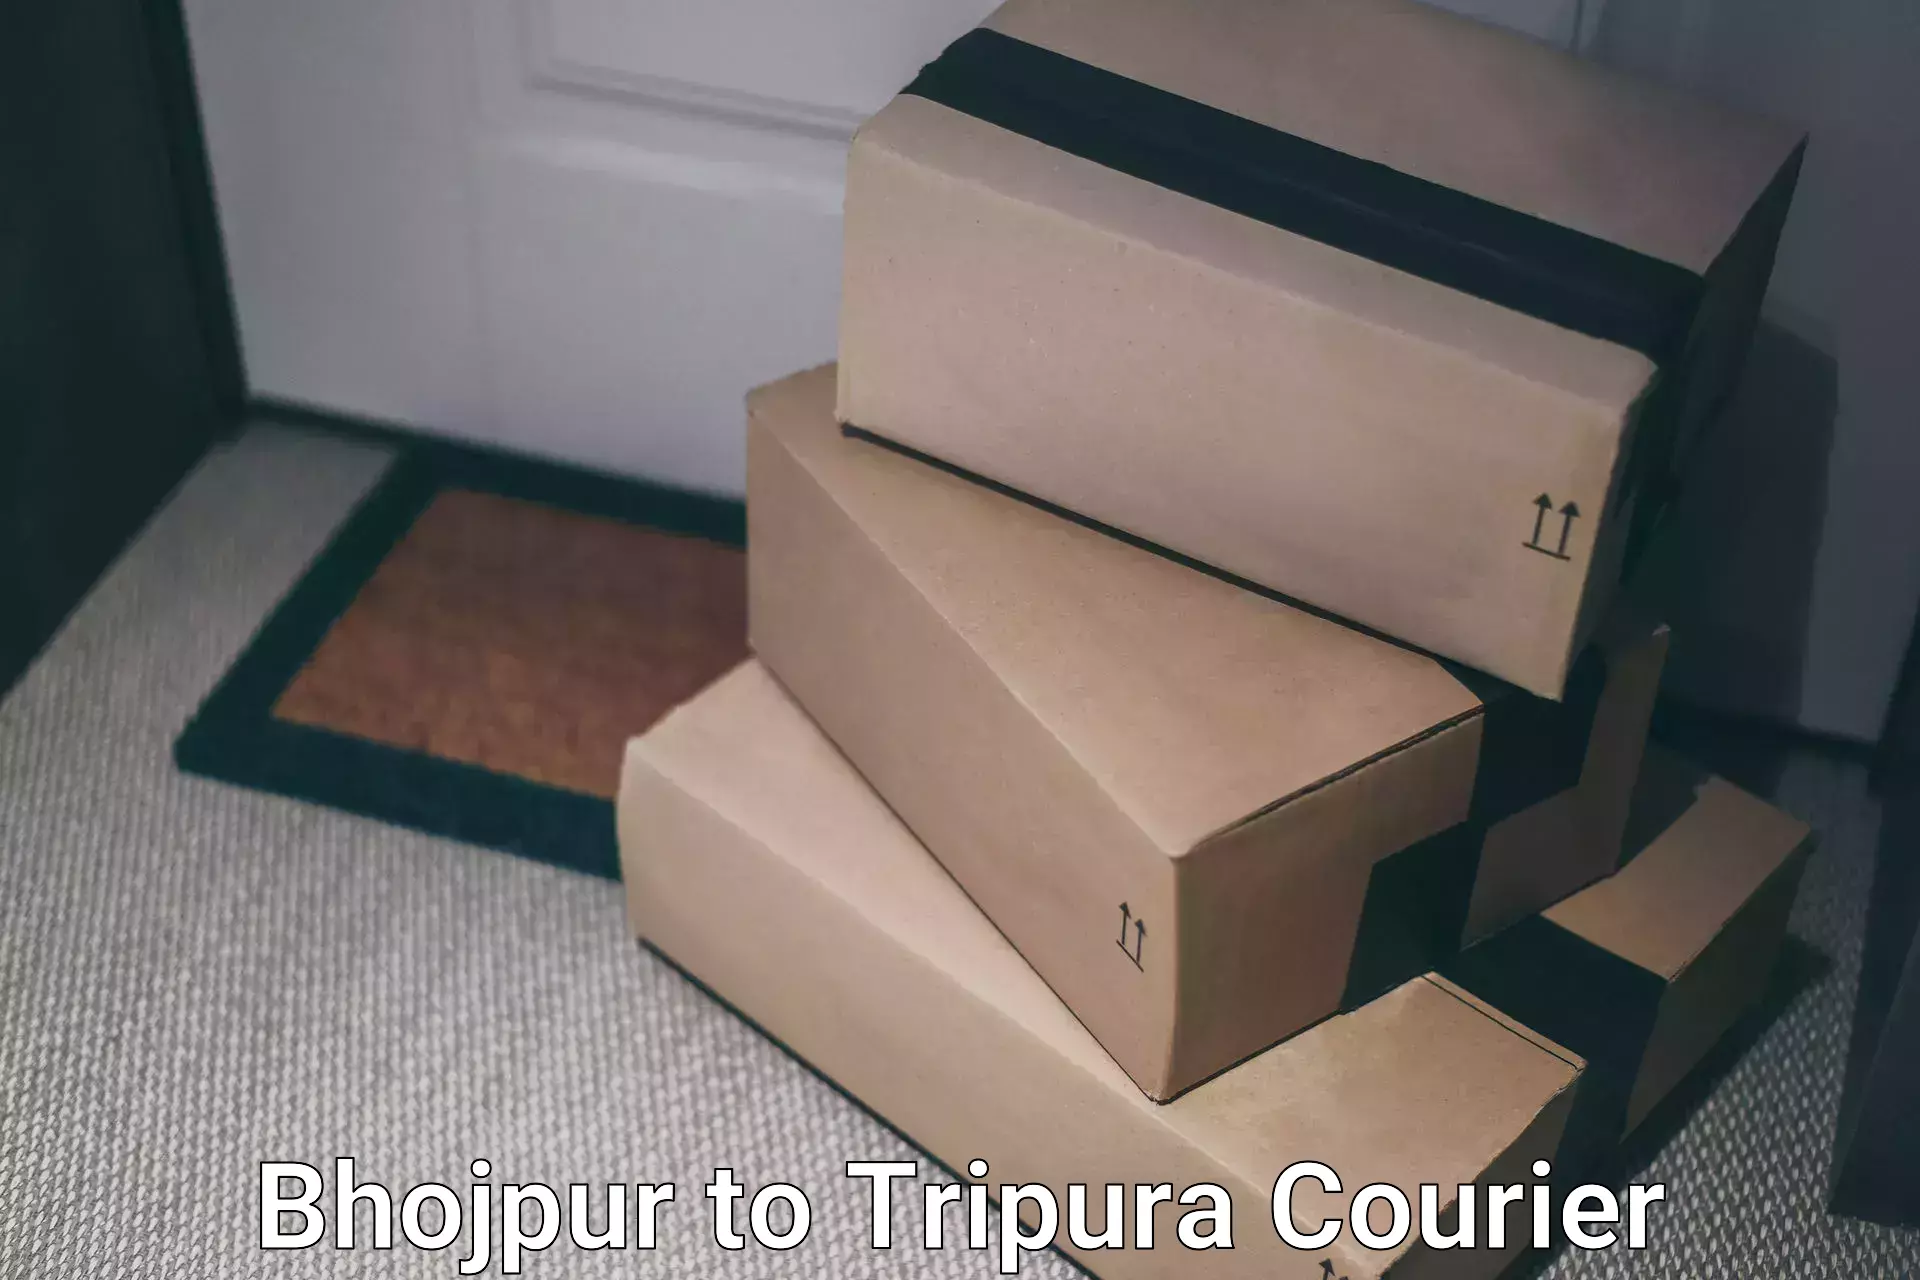 International parcel service Bhojpur to Amarpur